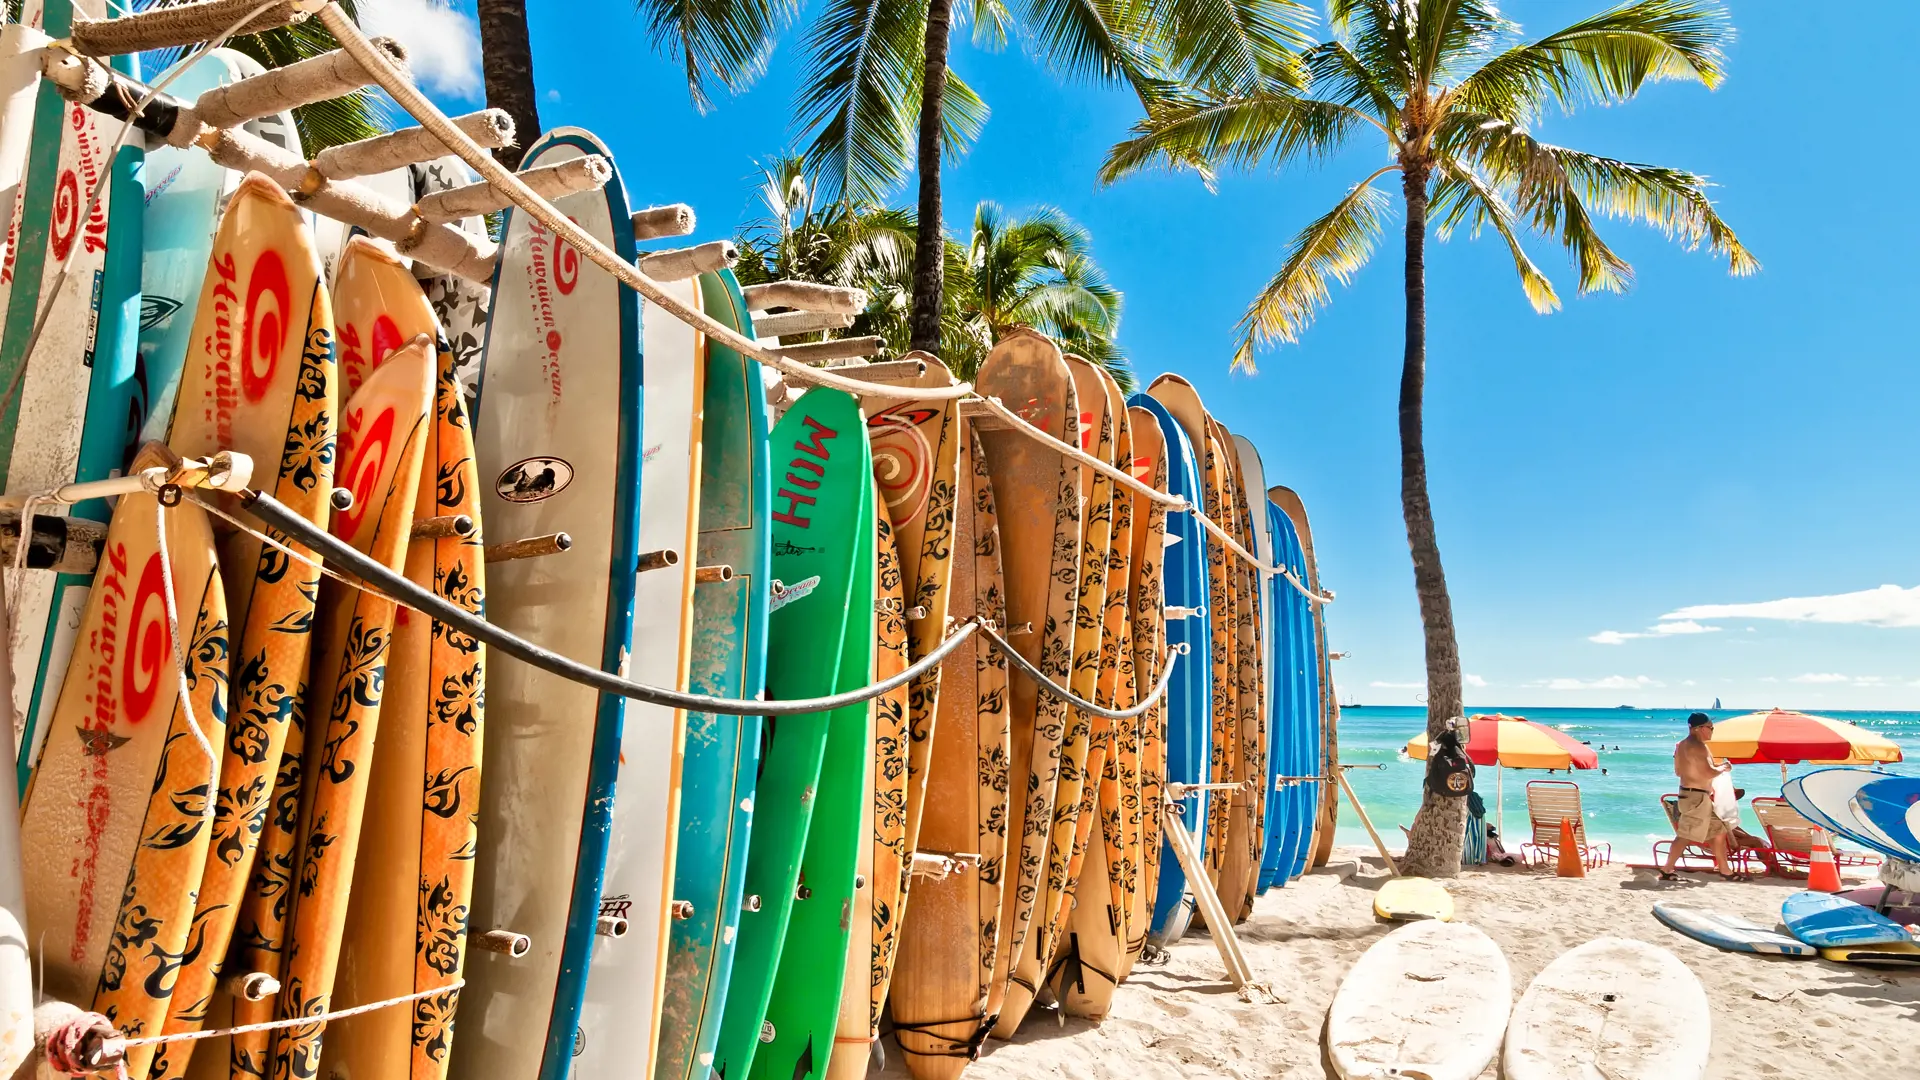 HONOLULU, OAHU - På Waikiki-stranden i Honolulu er der gjort klar til en gang surfing.